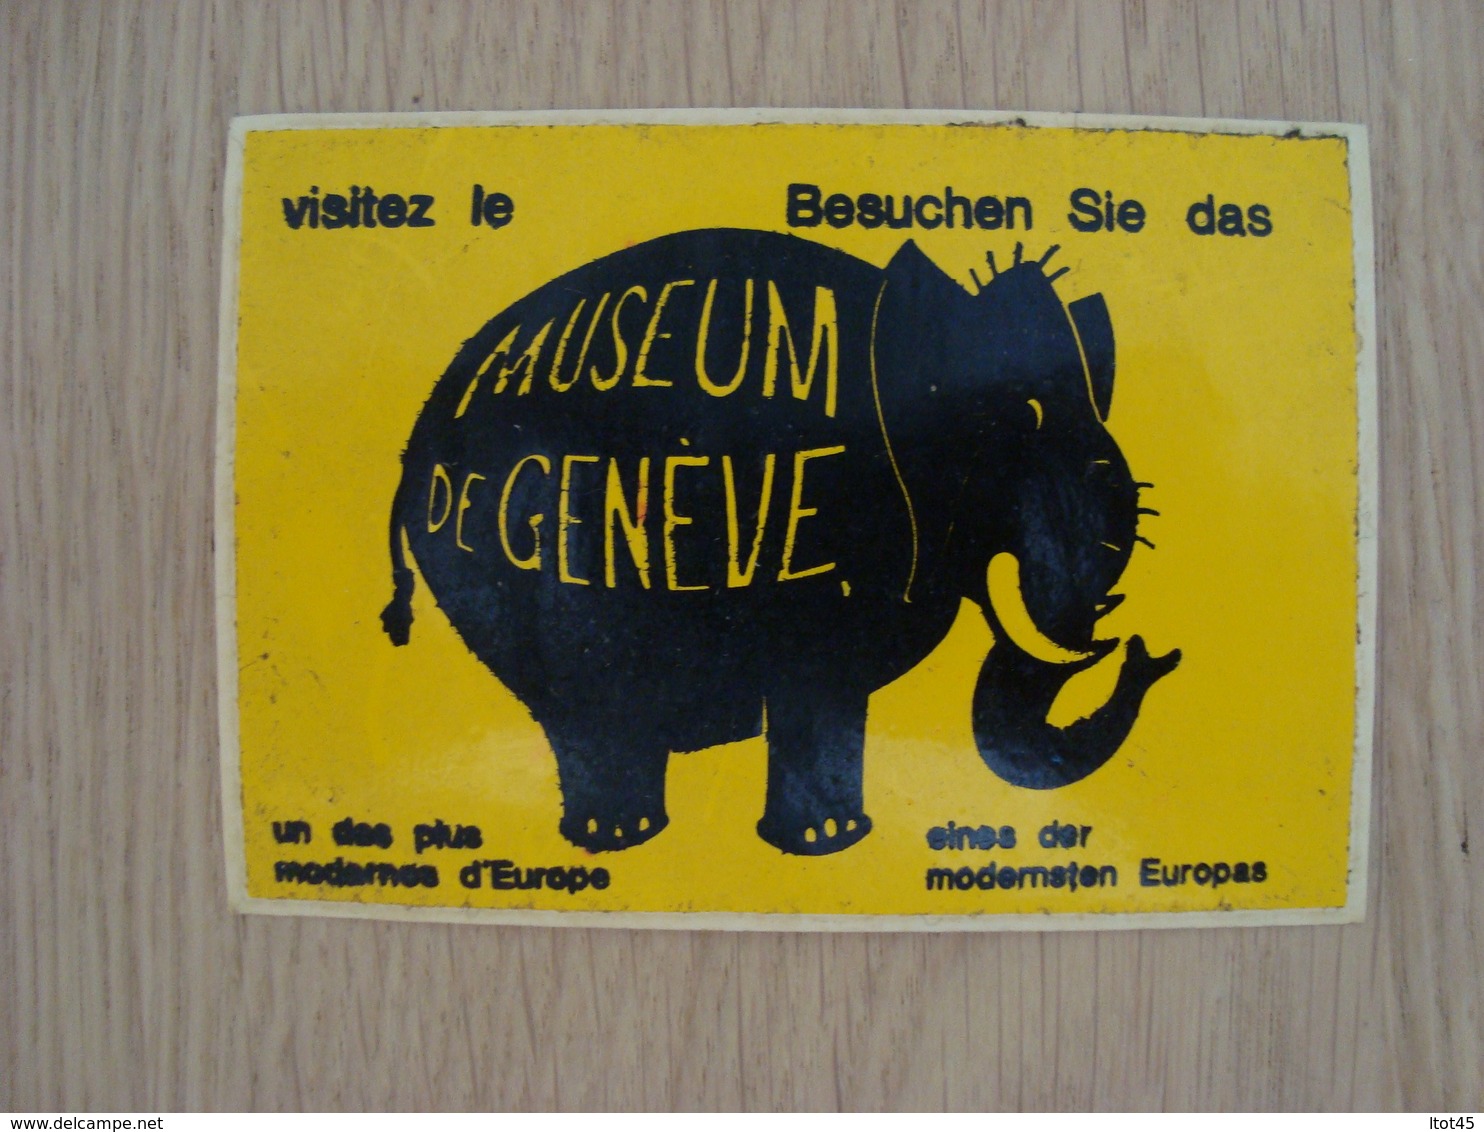 AUTOCOLLANT MUSEUM DE GENEVE - Stickers